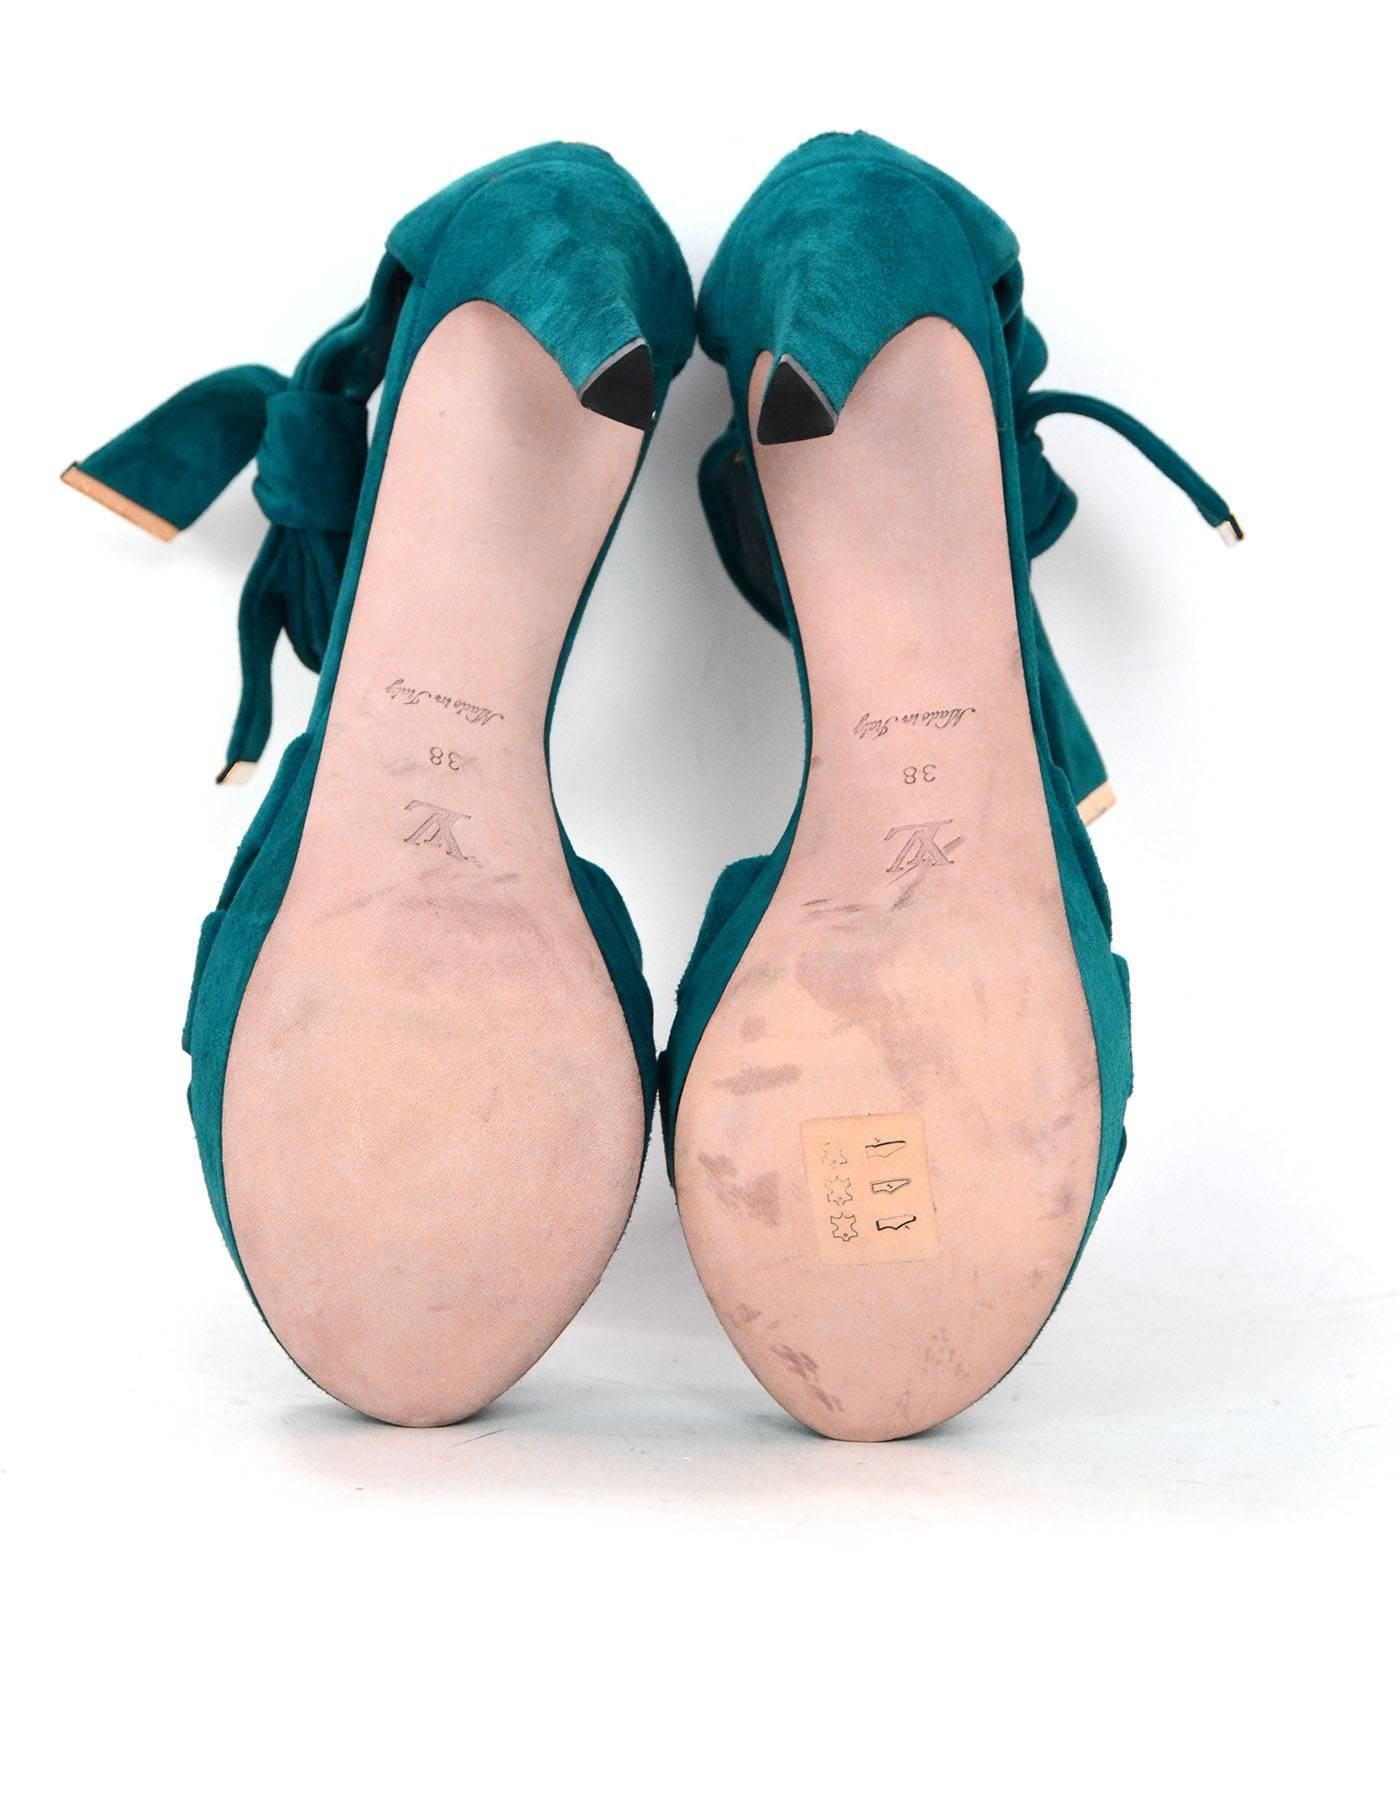 Louis Vuitton Teal Suede Platform Sandals Sz 38 1